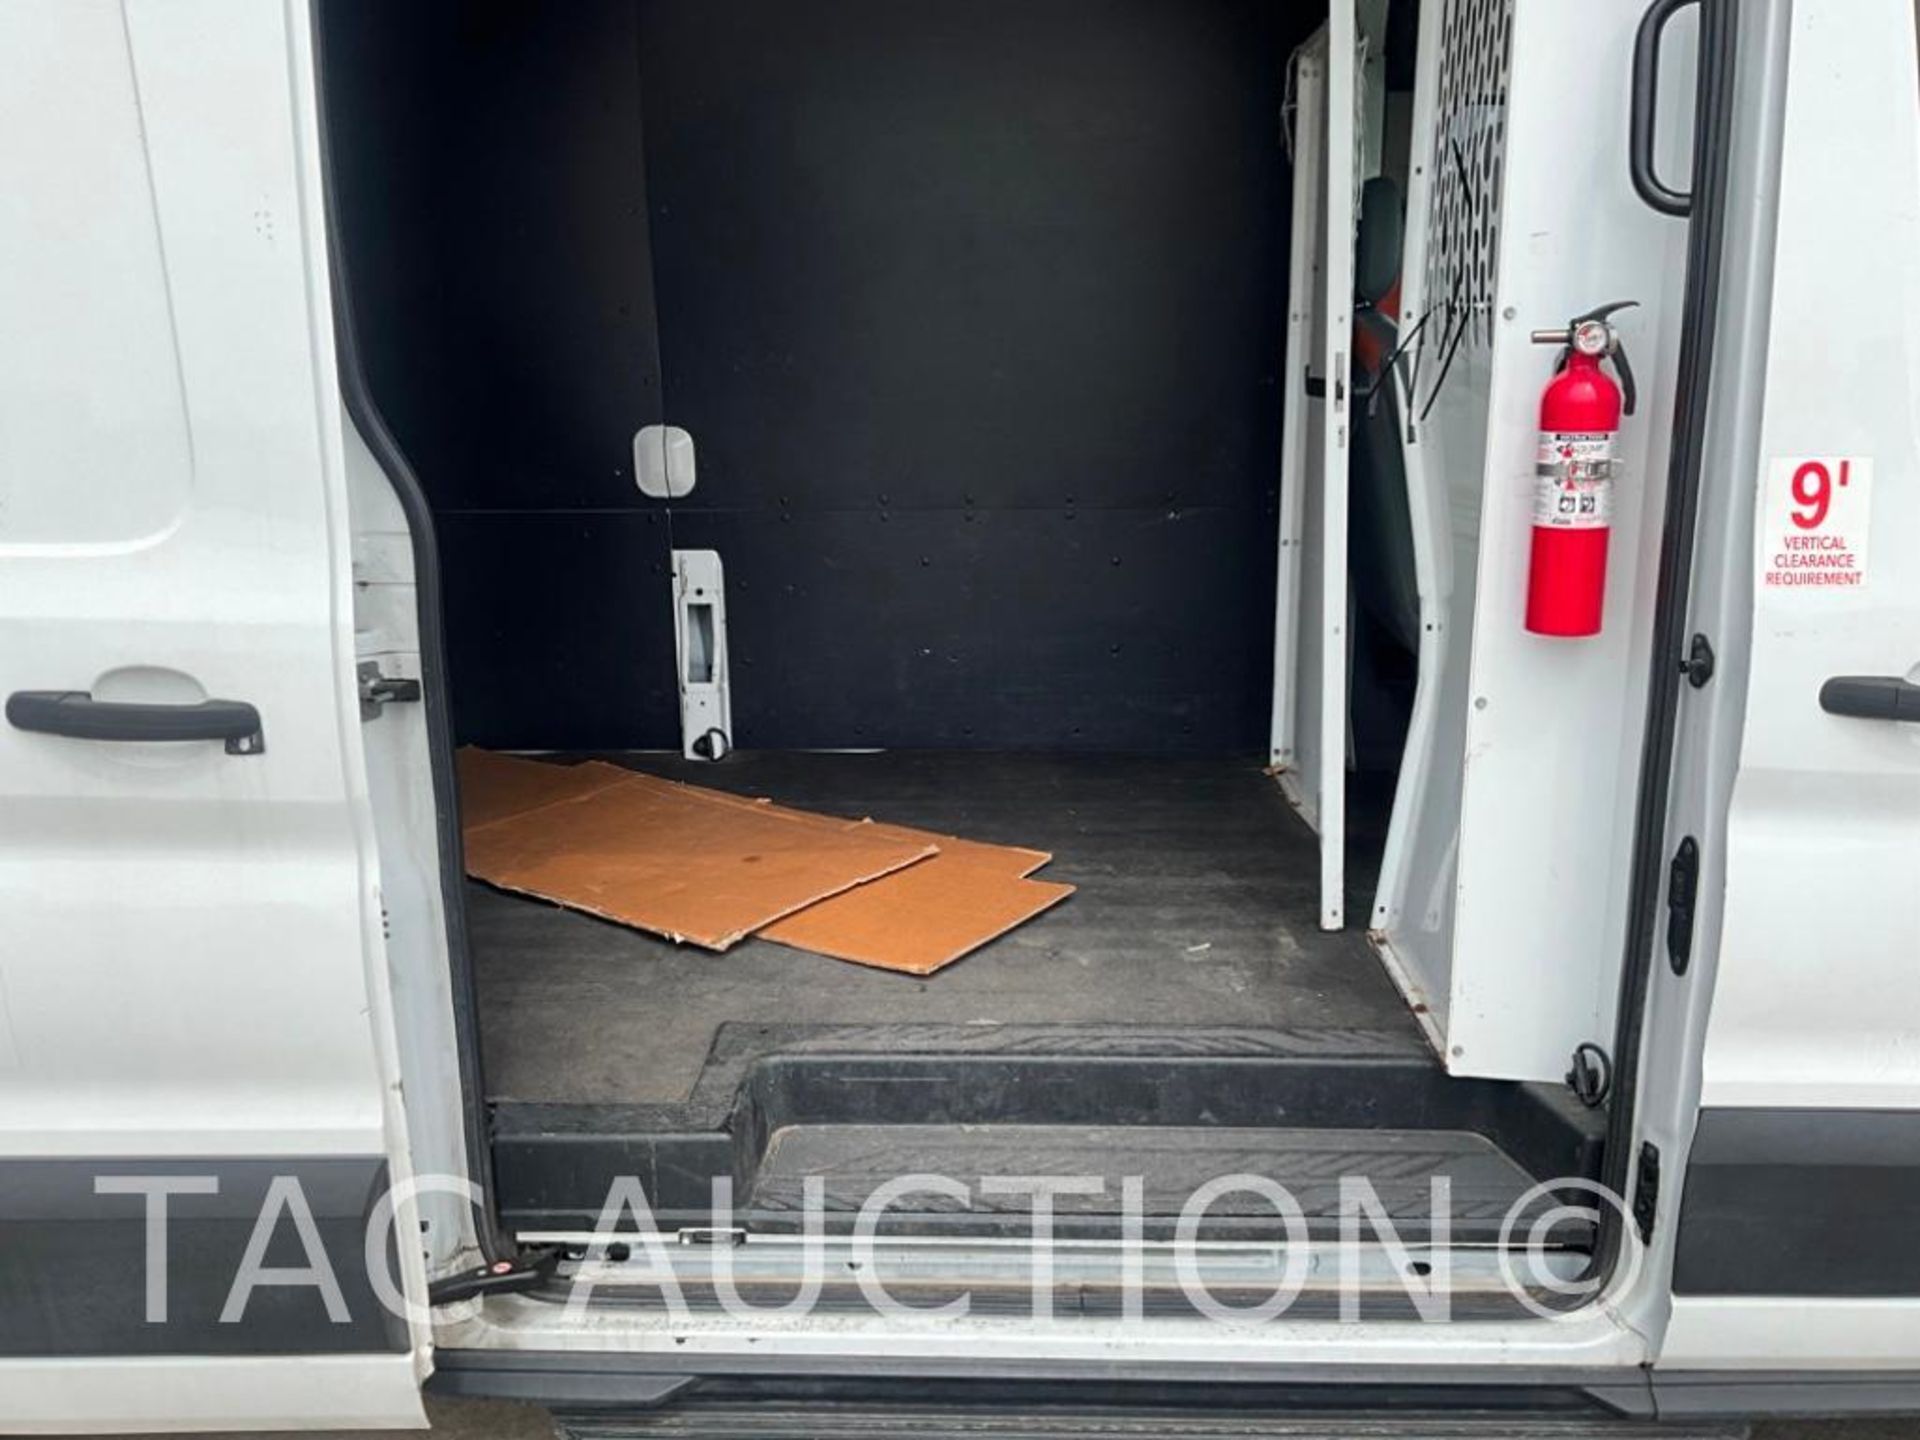 2019 Ford Transit 150 Cargo Van - Image 29 of 61